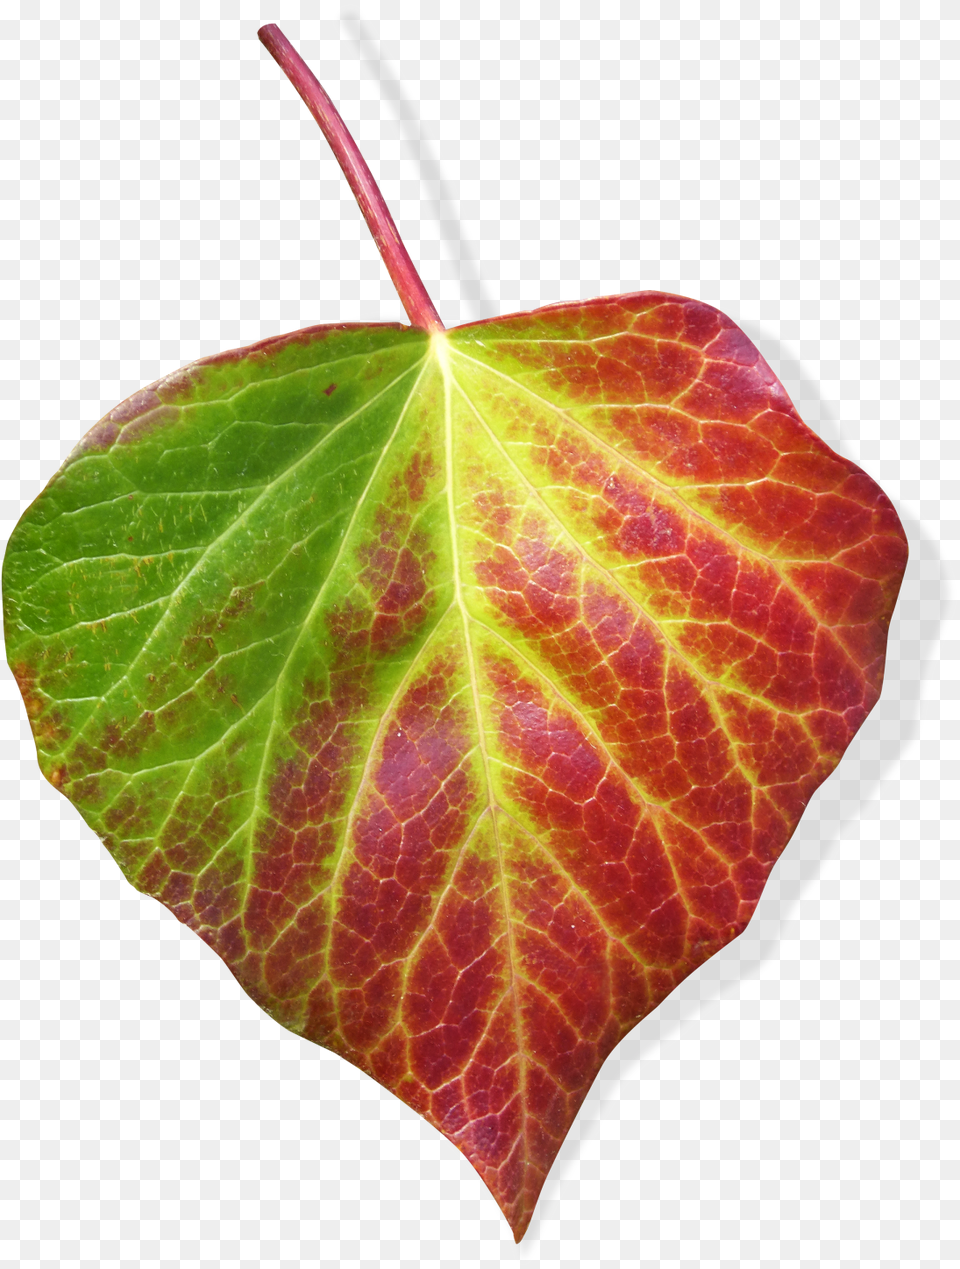 Green And Red Leaf Ivy Leaf Transparent Background Leaf, Plant, Flower Free Png